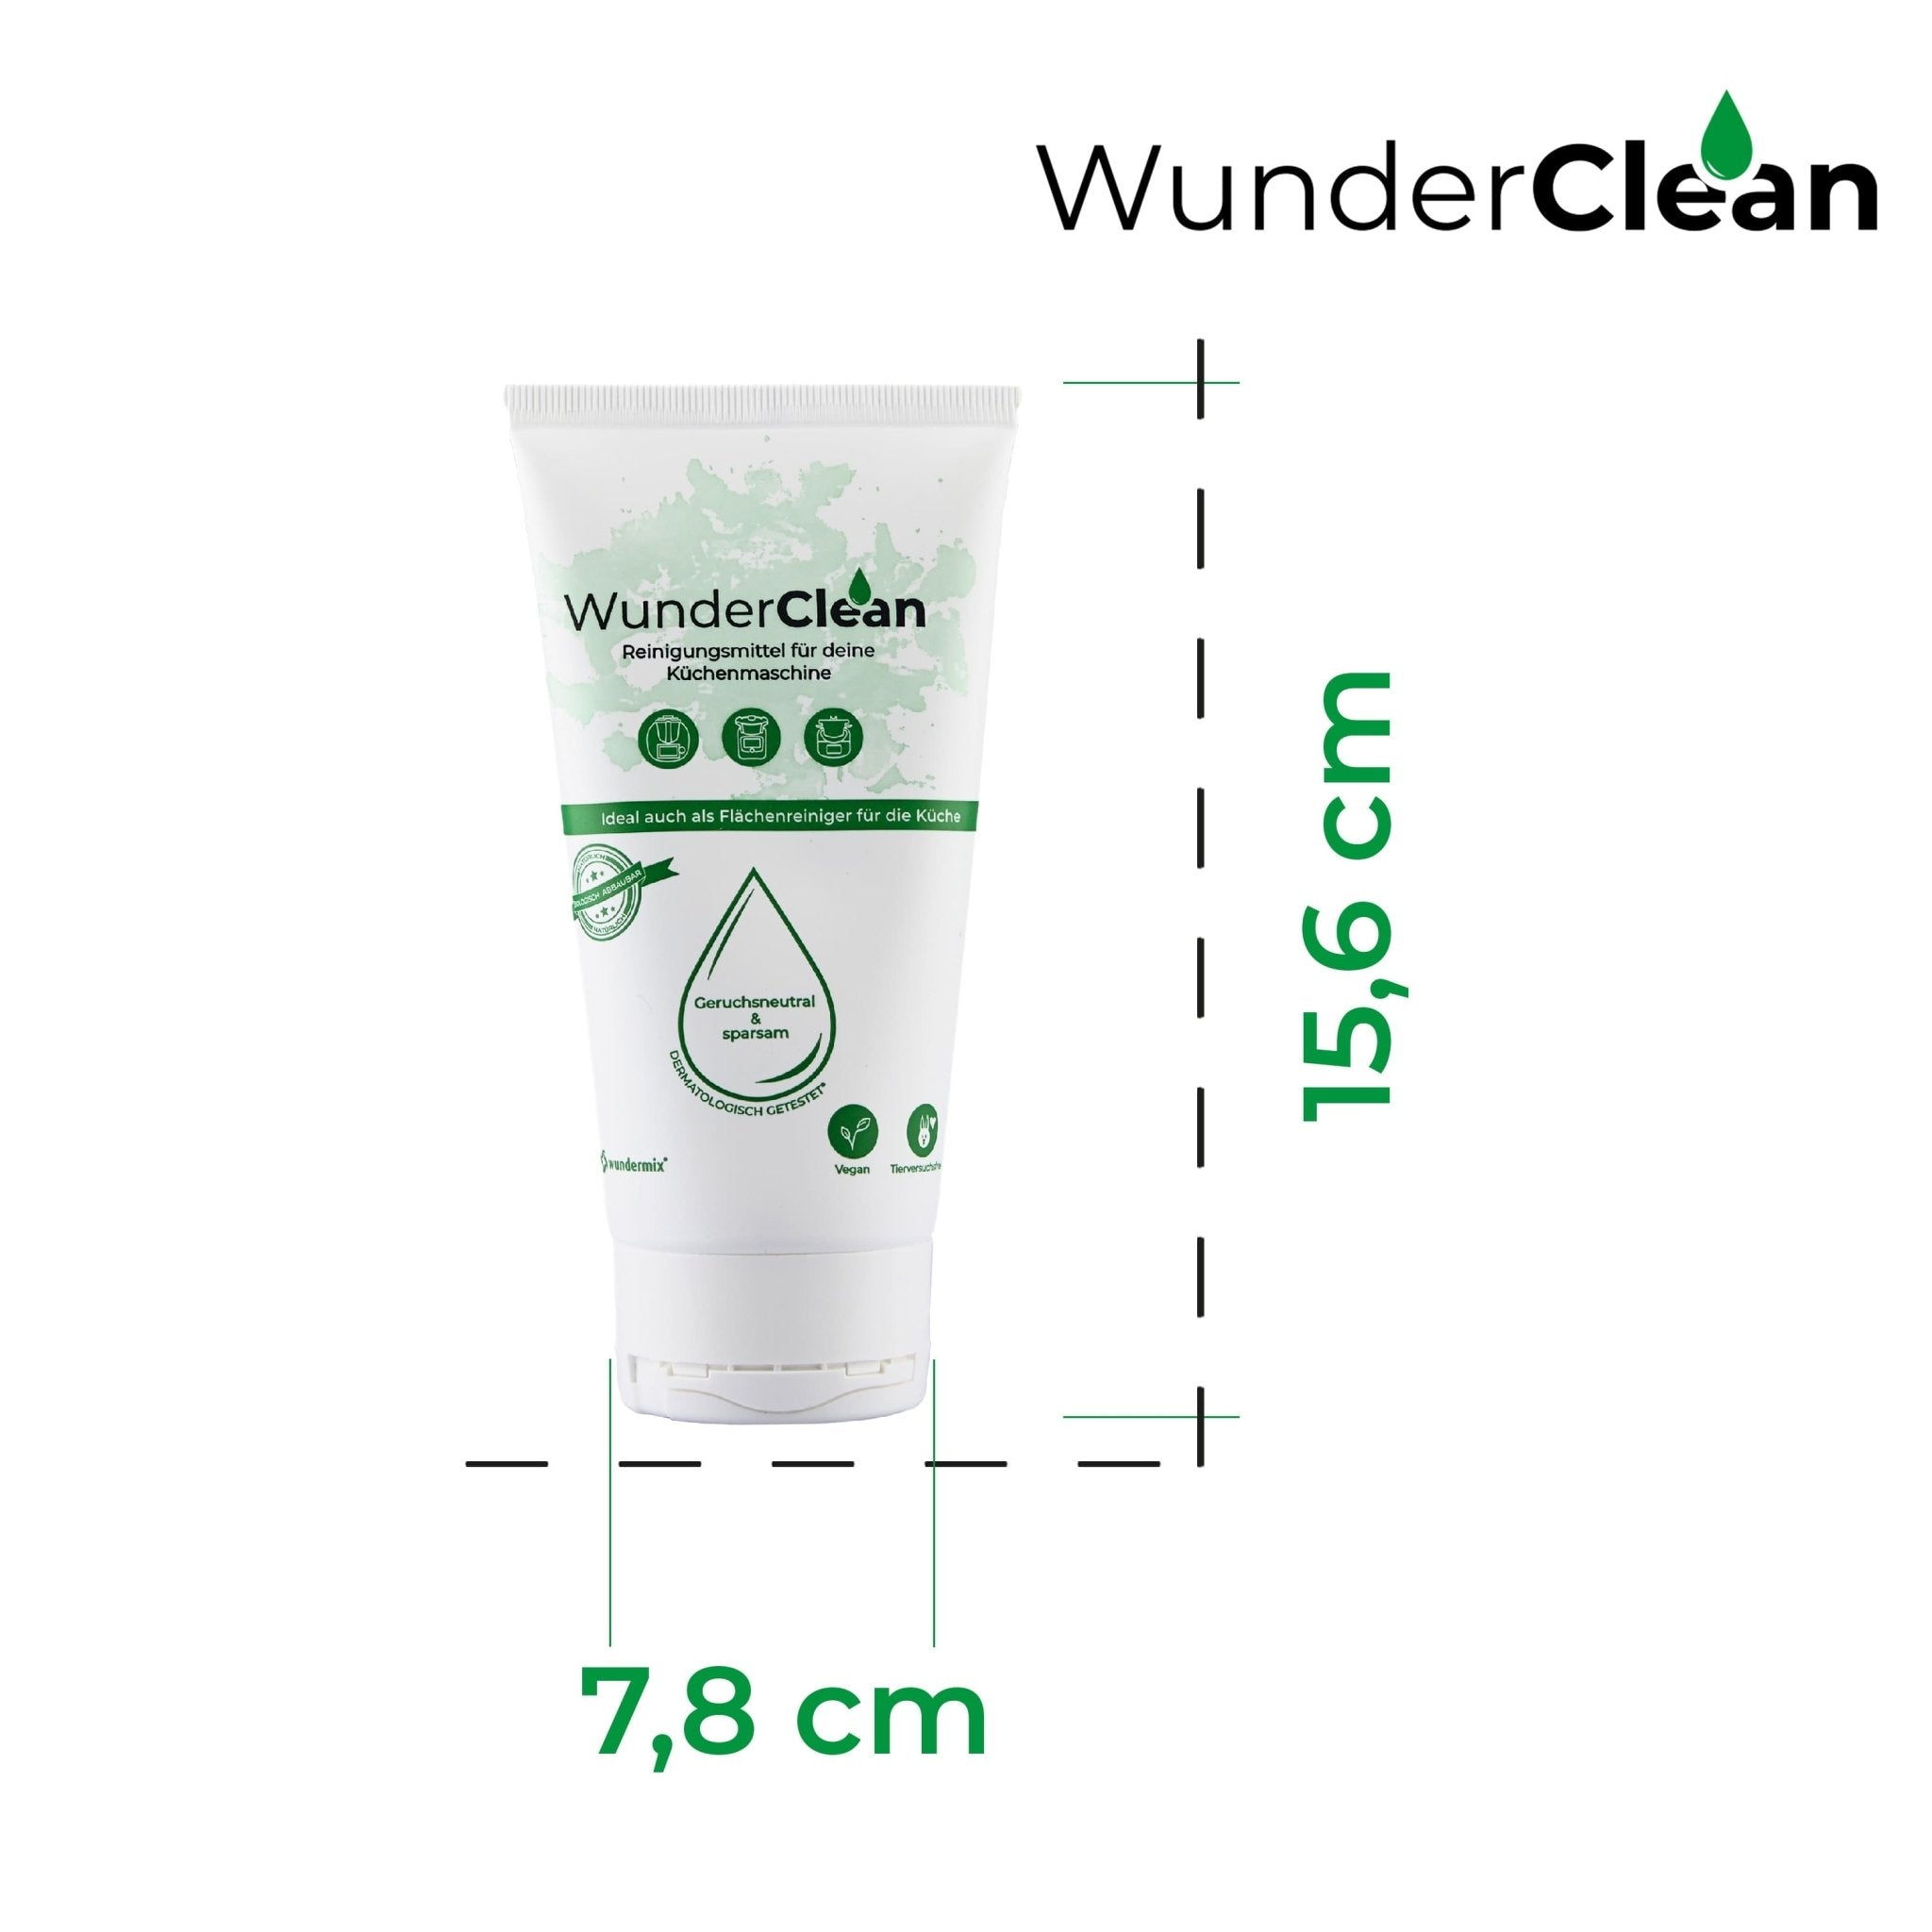 WunderClean Reiniger | Ökologisches Reinigungsmittel in der Tube | 150g - Wundermix GmbH